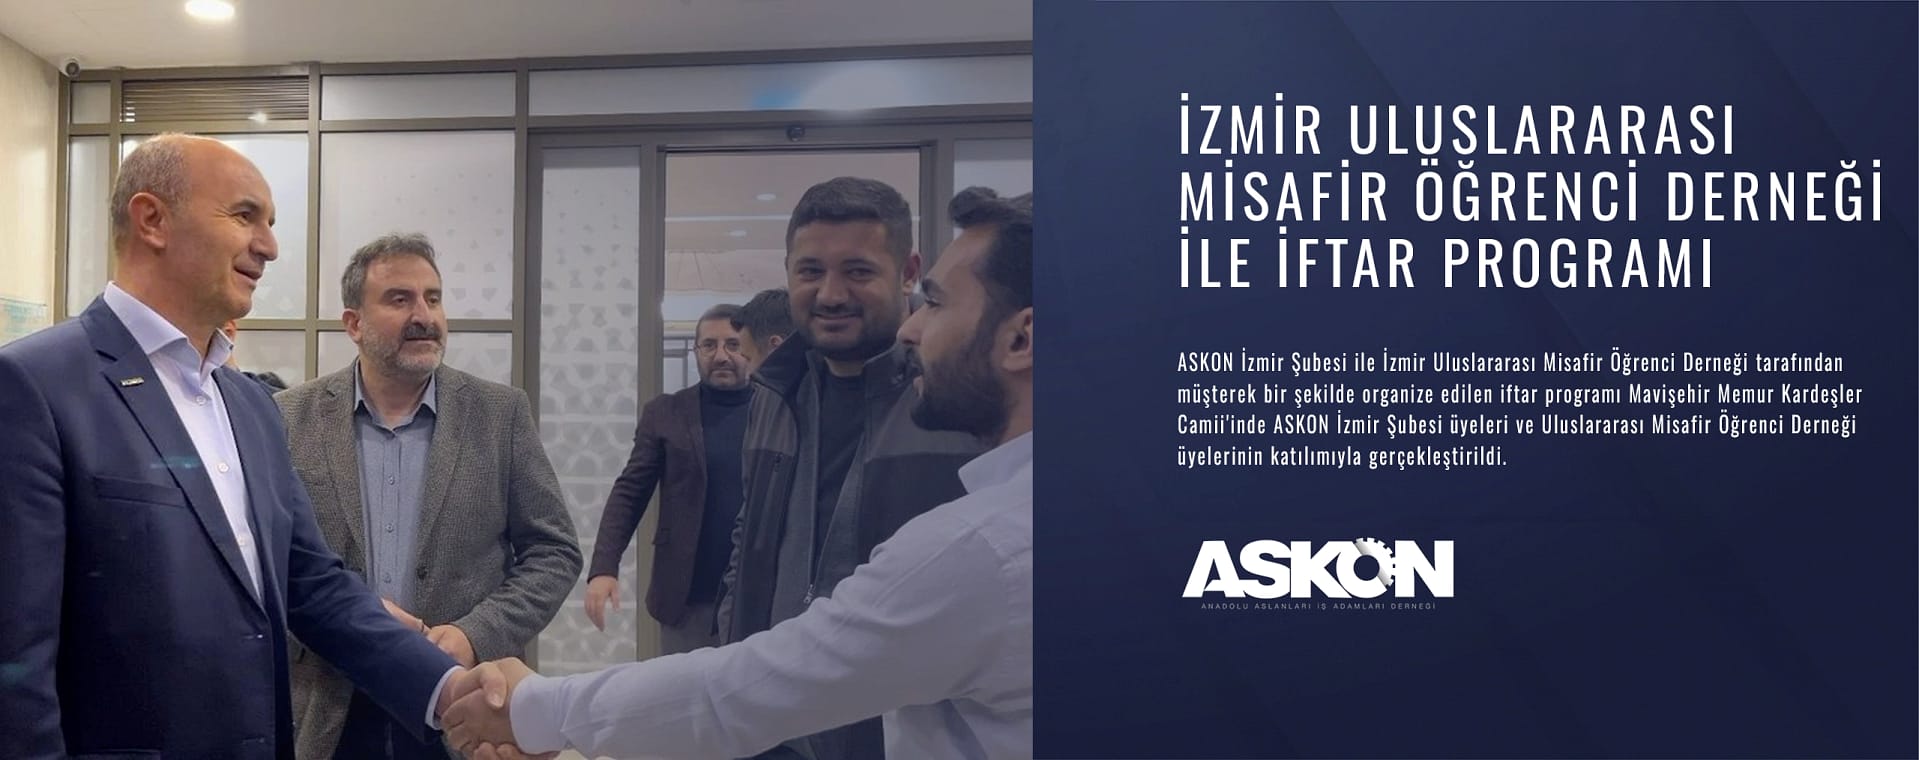 İzmir Uluslararası Misafir Öğrenci Derneği ile iftar programı